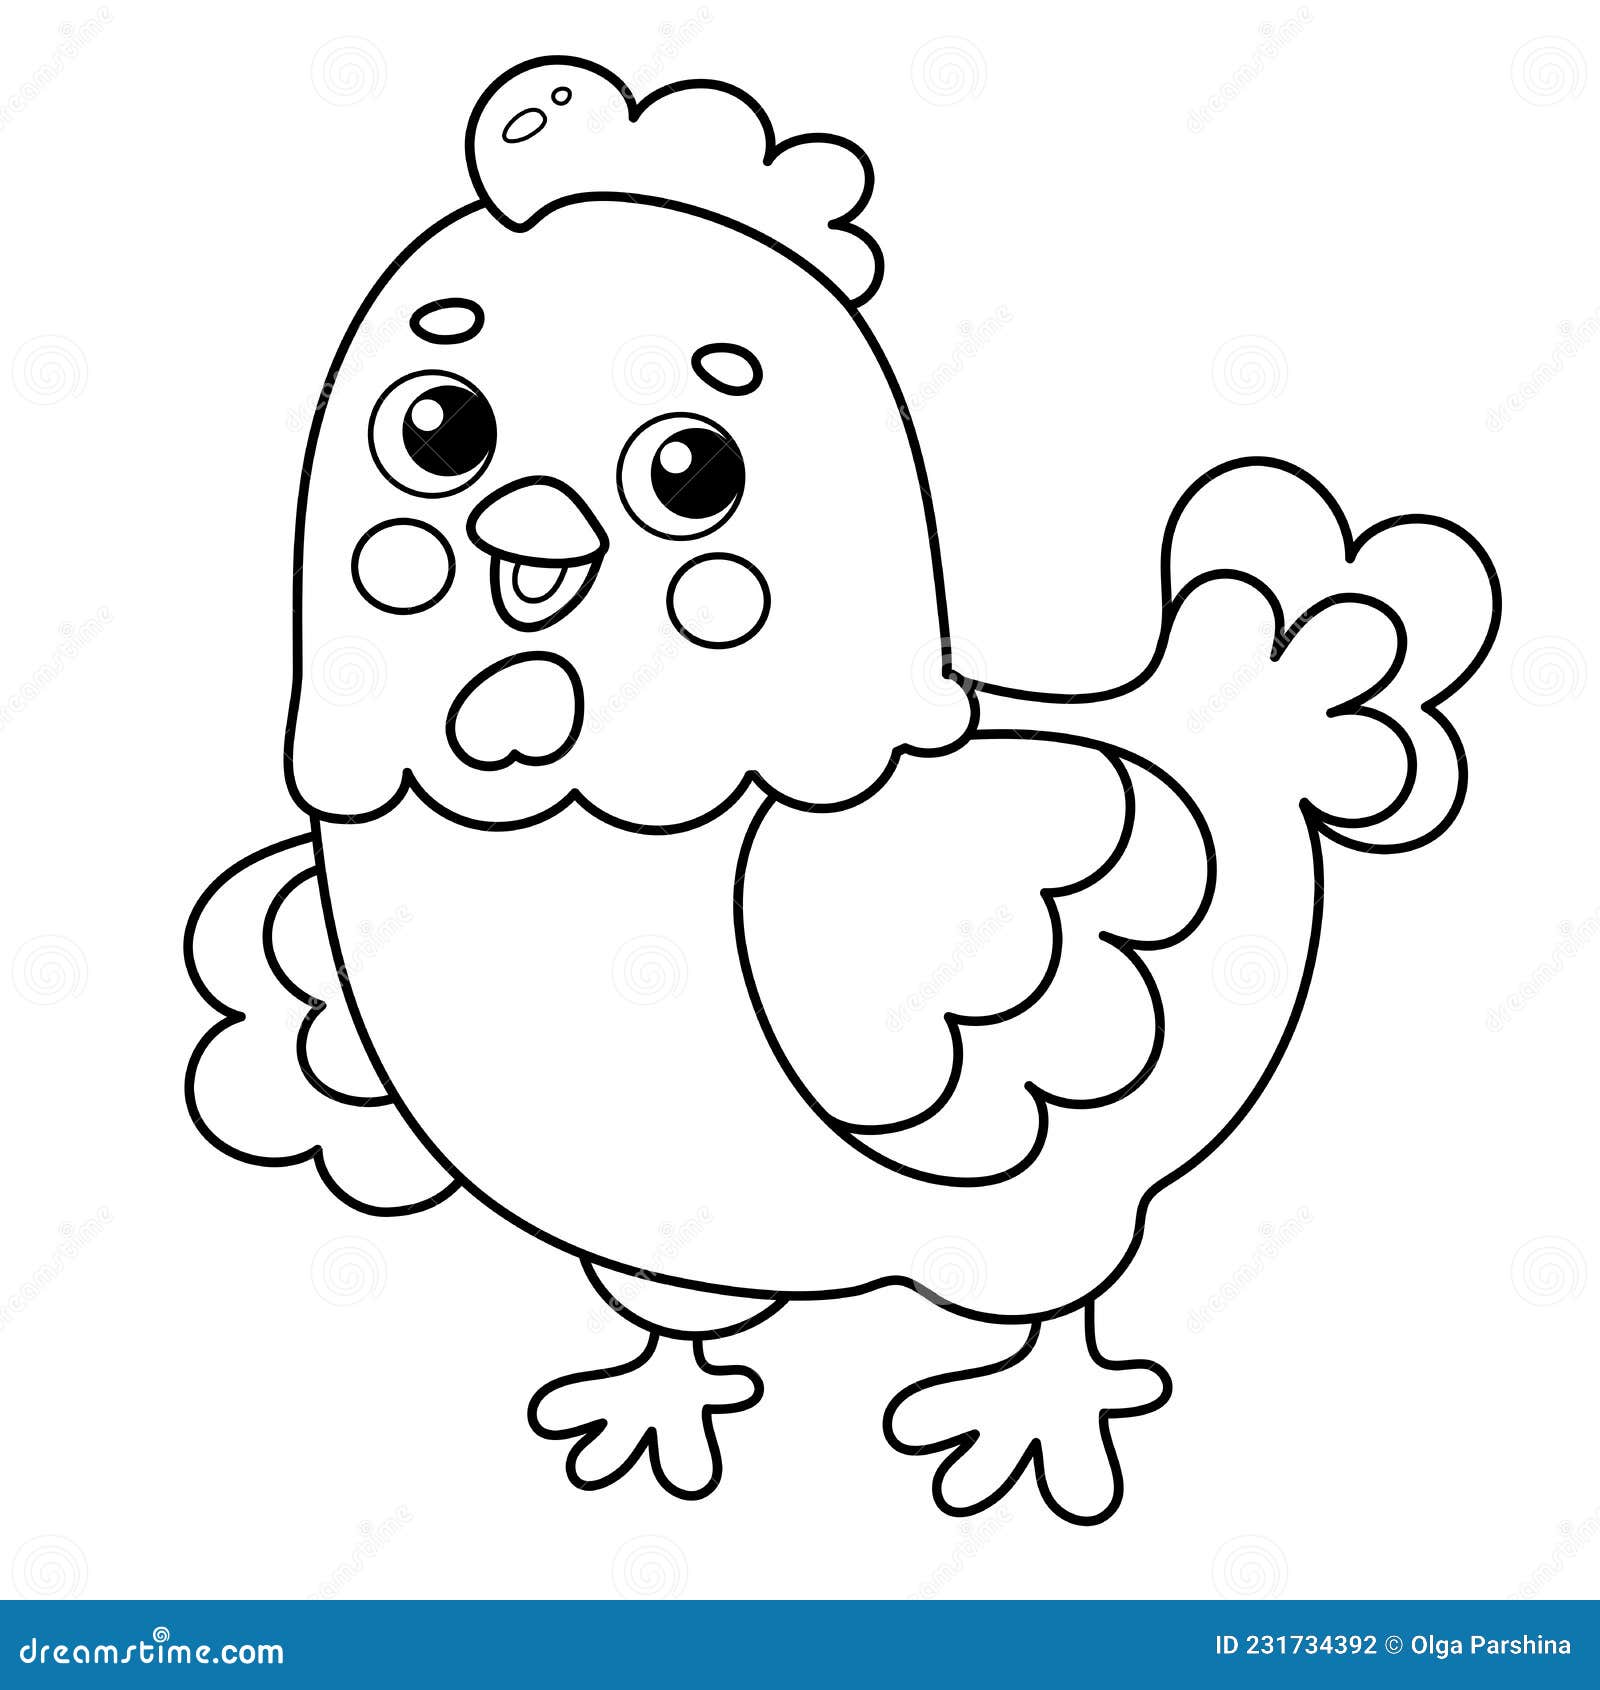 Desenhos para colorir dos animais da fazenda: galo e galinha!